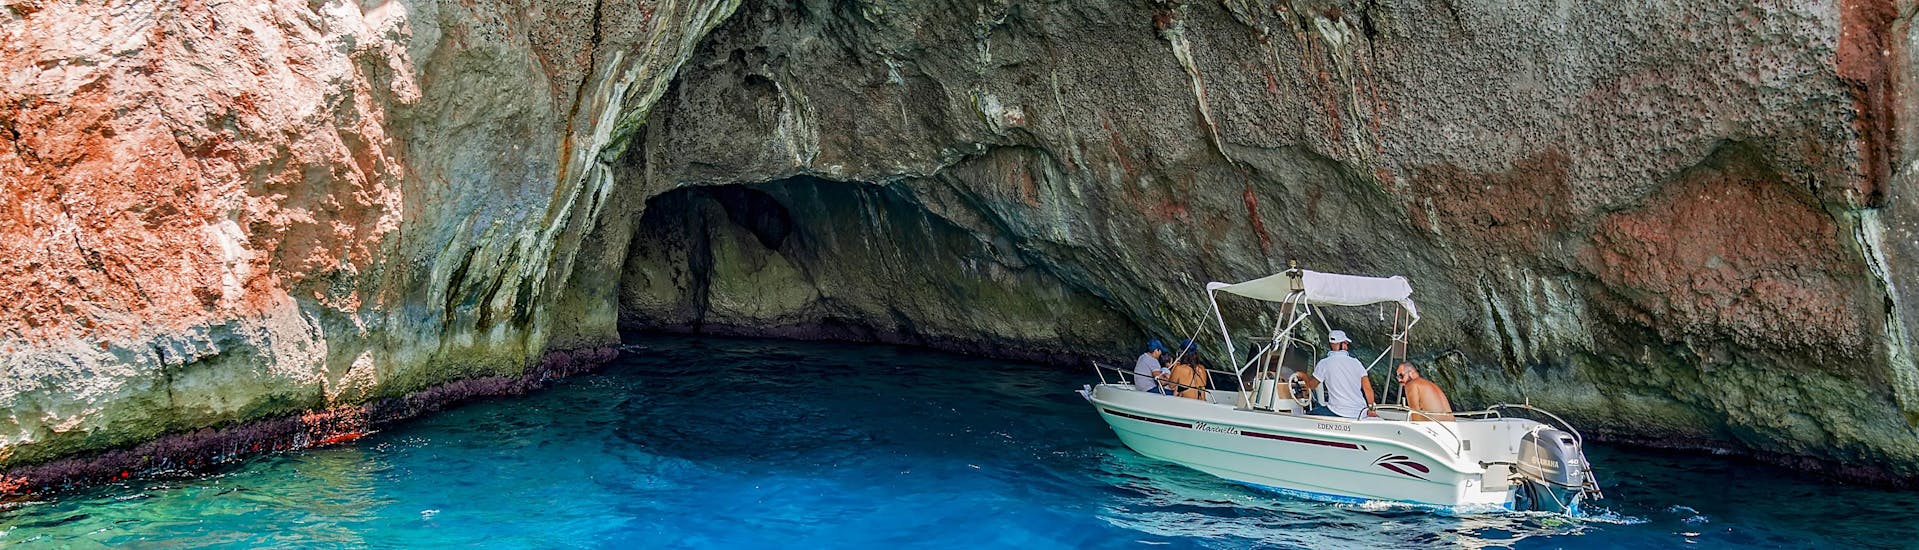 Un groupe d'amis fait une excursion en bateau dans la superbe destination Grotte bleue.